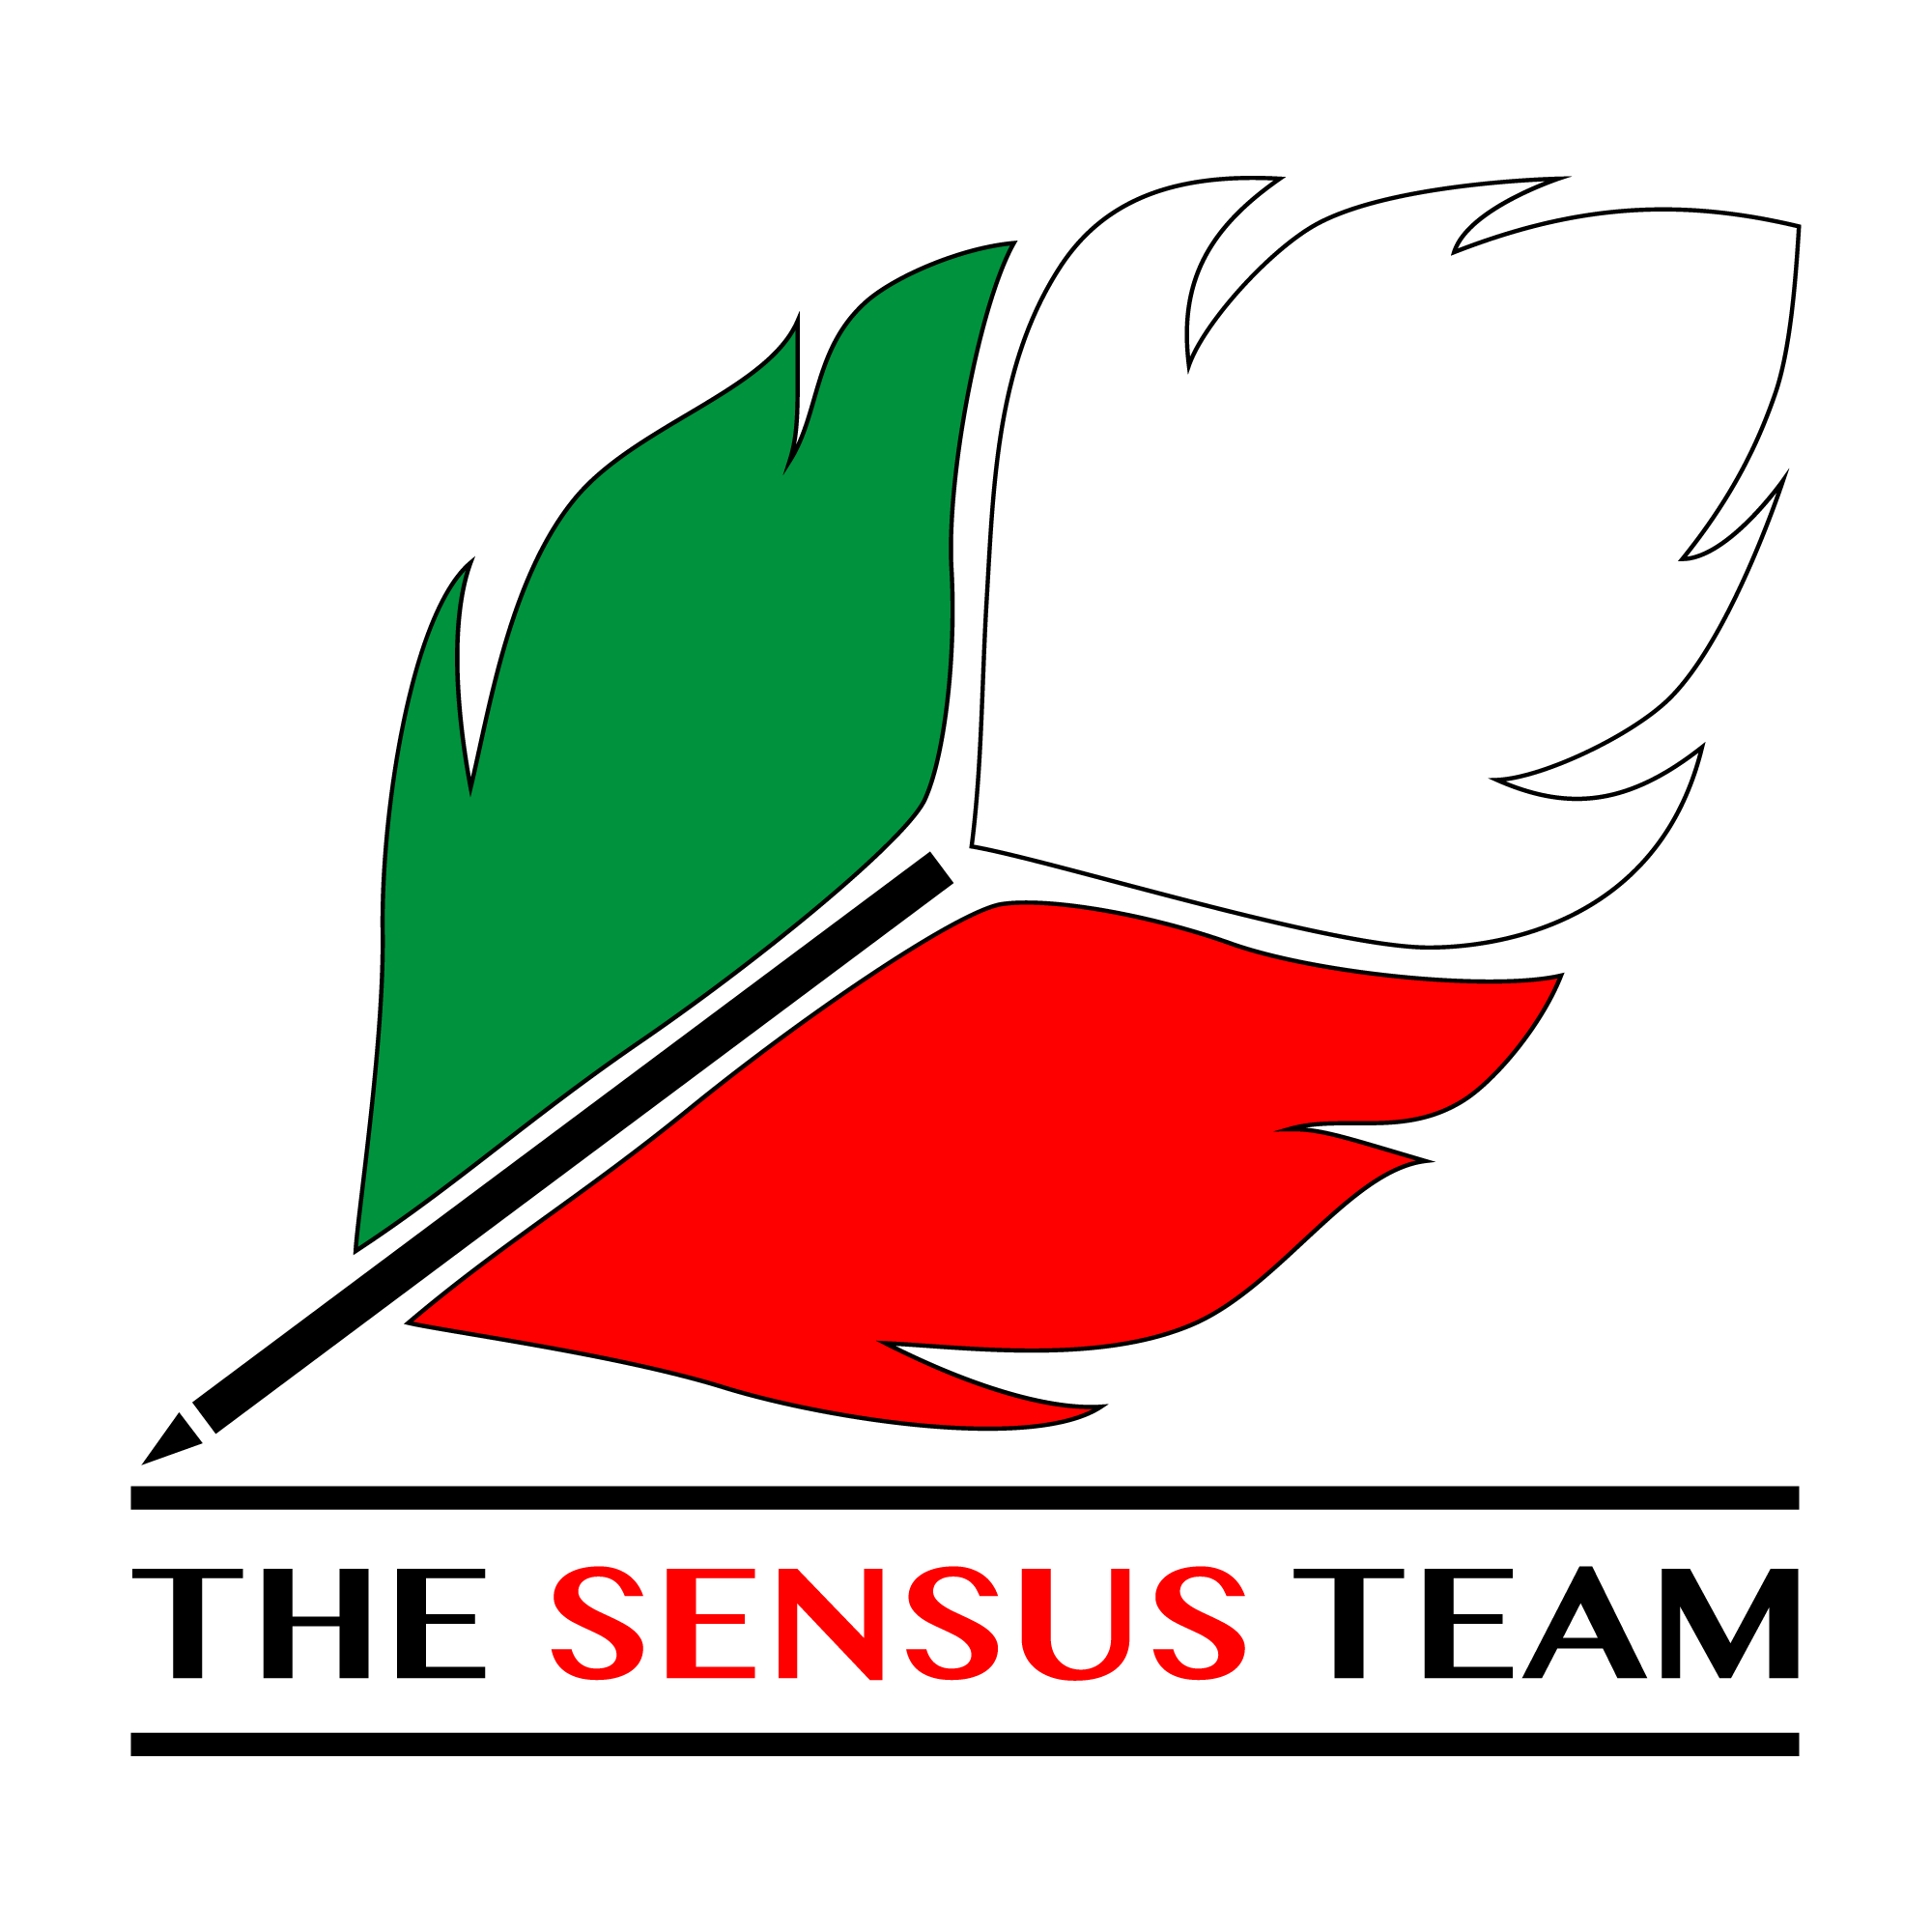 The Sensus Team